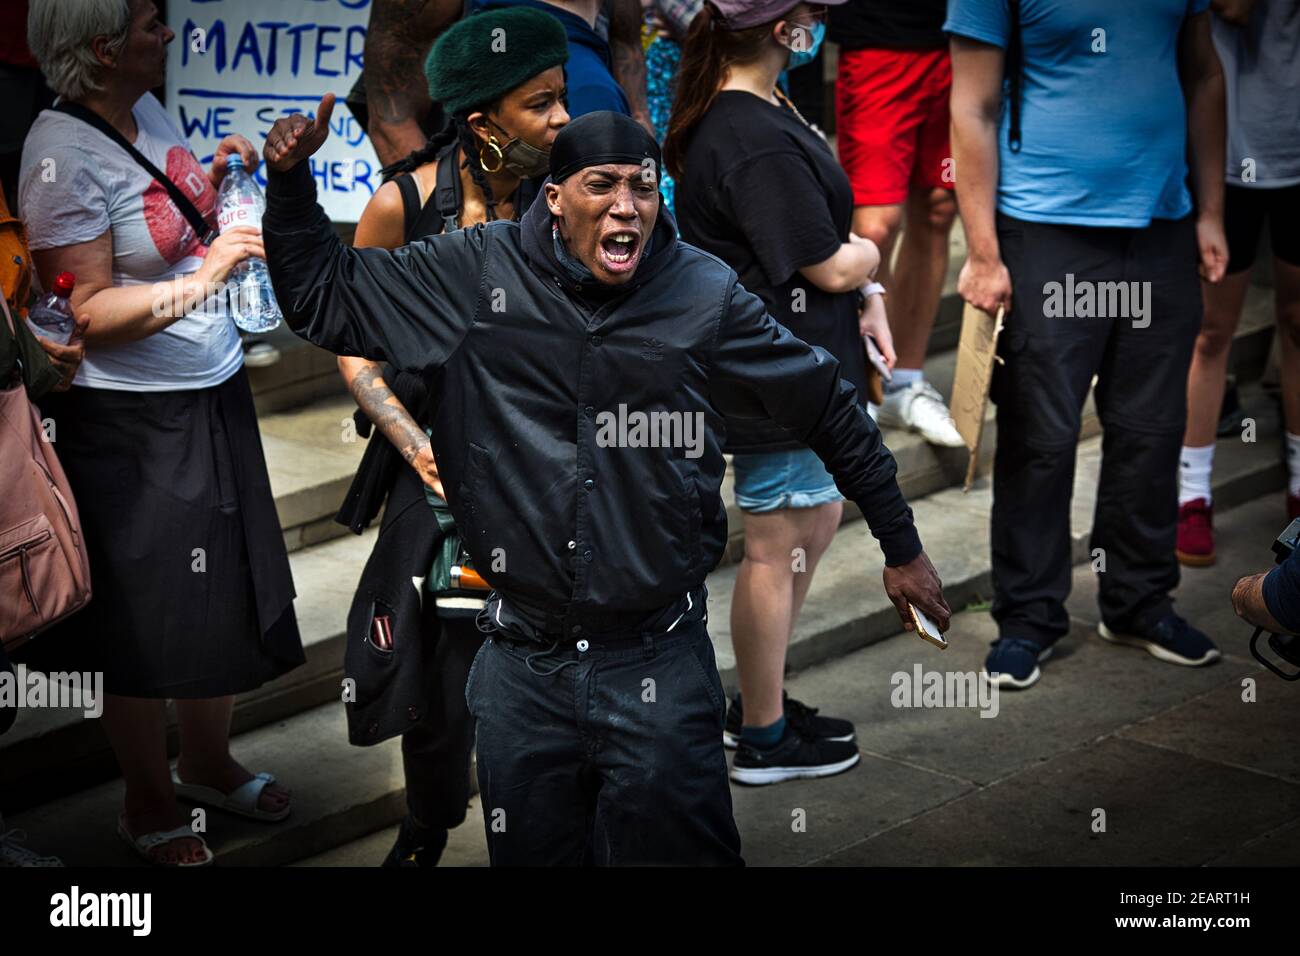 Angleterre / Londres / les partisans du groupe de protestation de la Black Rev de Londres soulèvent le poing devant les manifestants d'extrême-droite sur la place Trafalgar à Londres. Banque D'Images